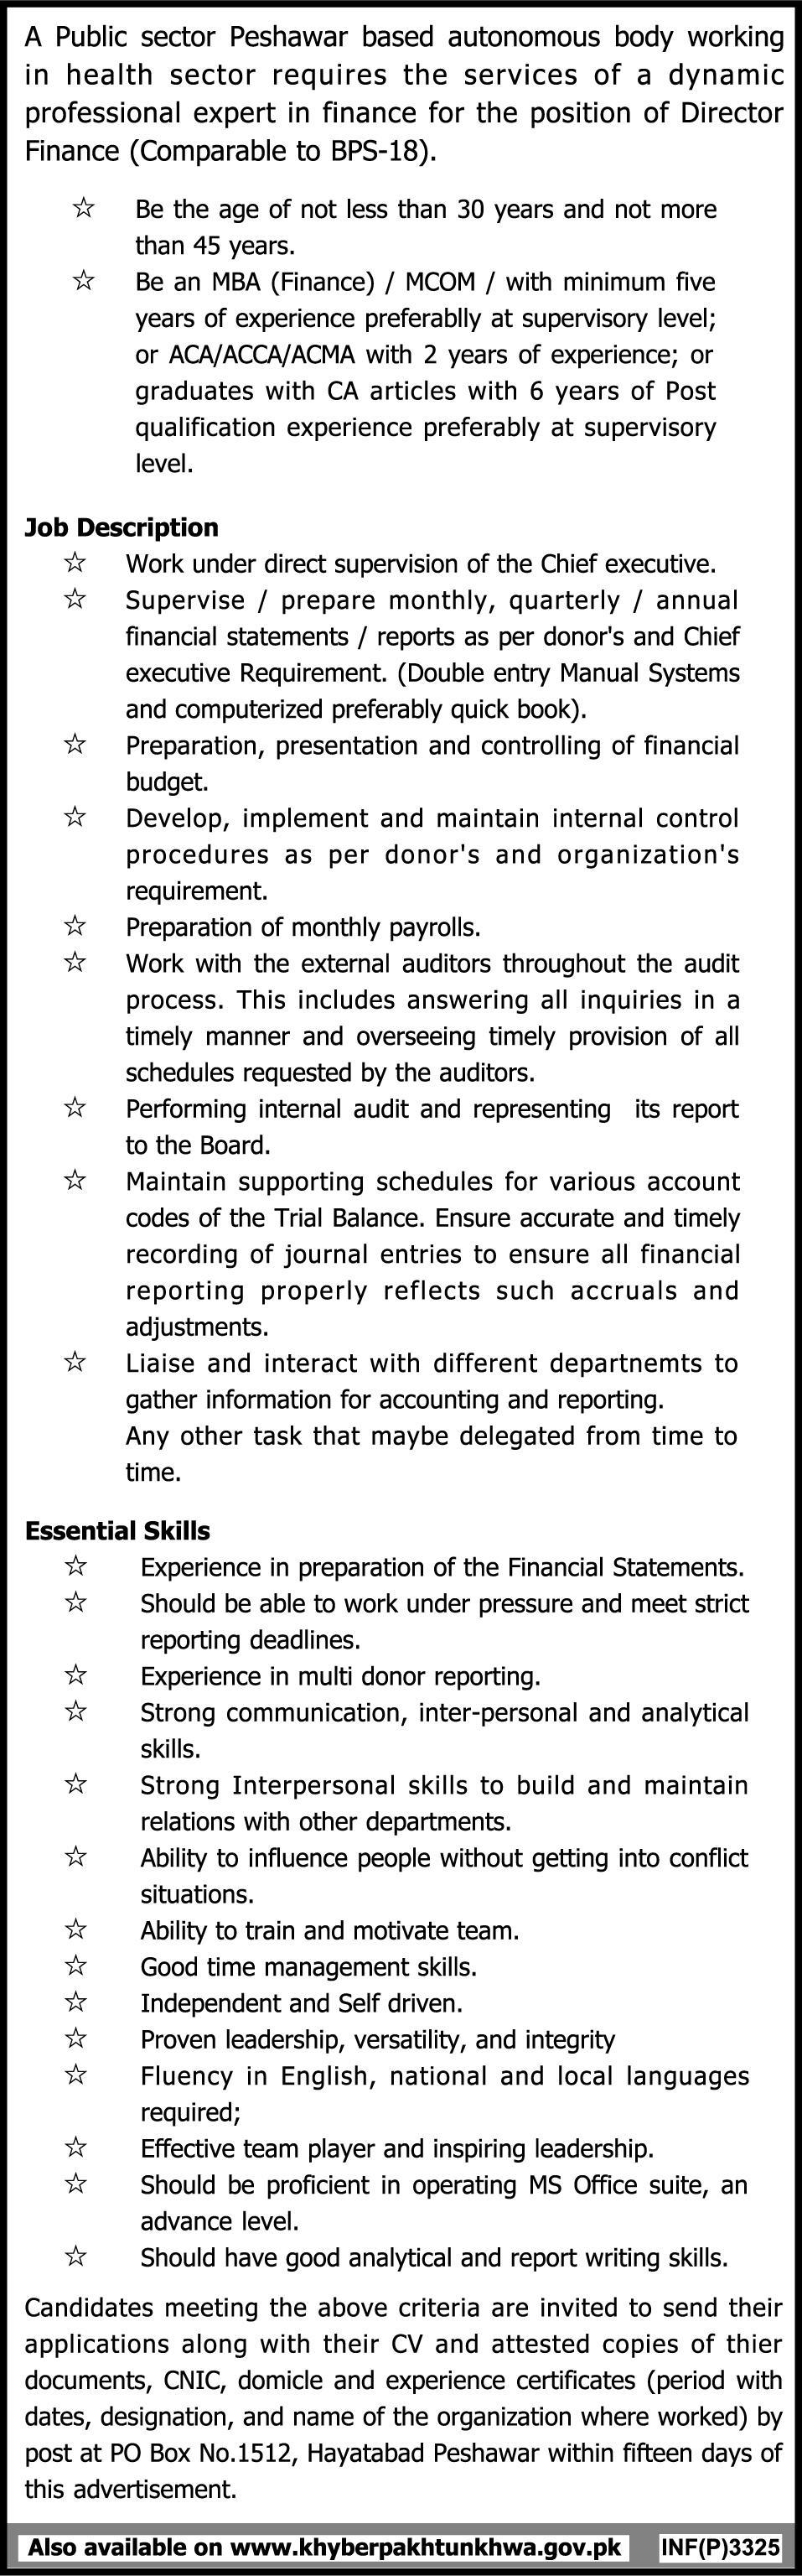 Director Finance Job in Public Sector Peshawar